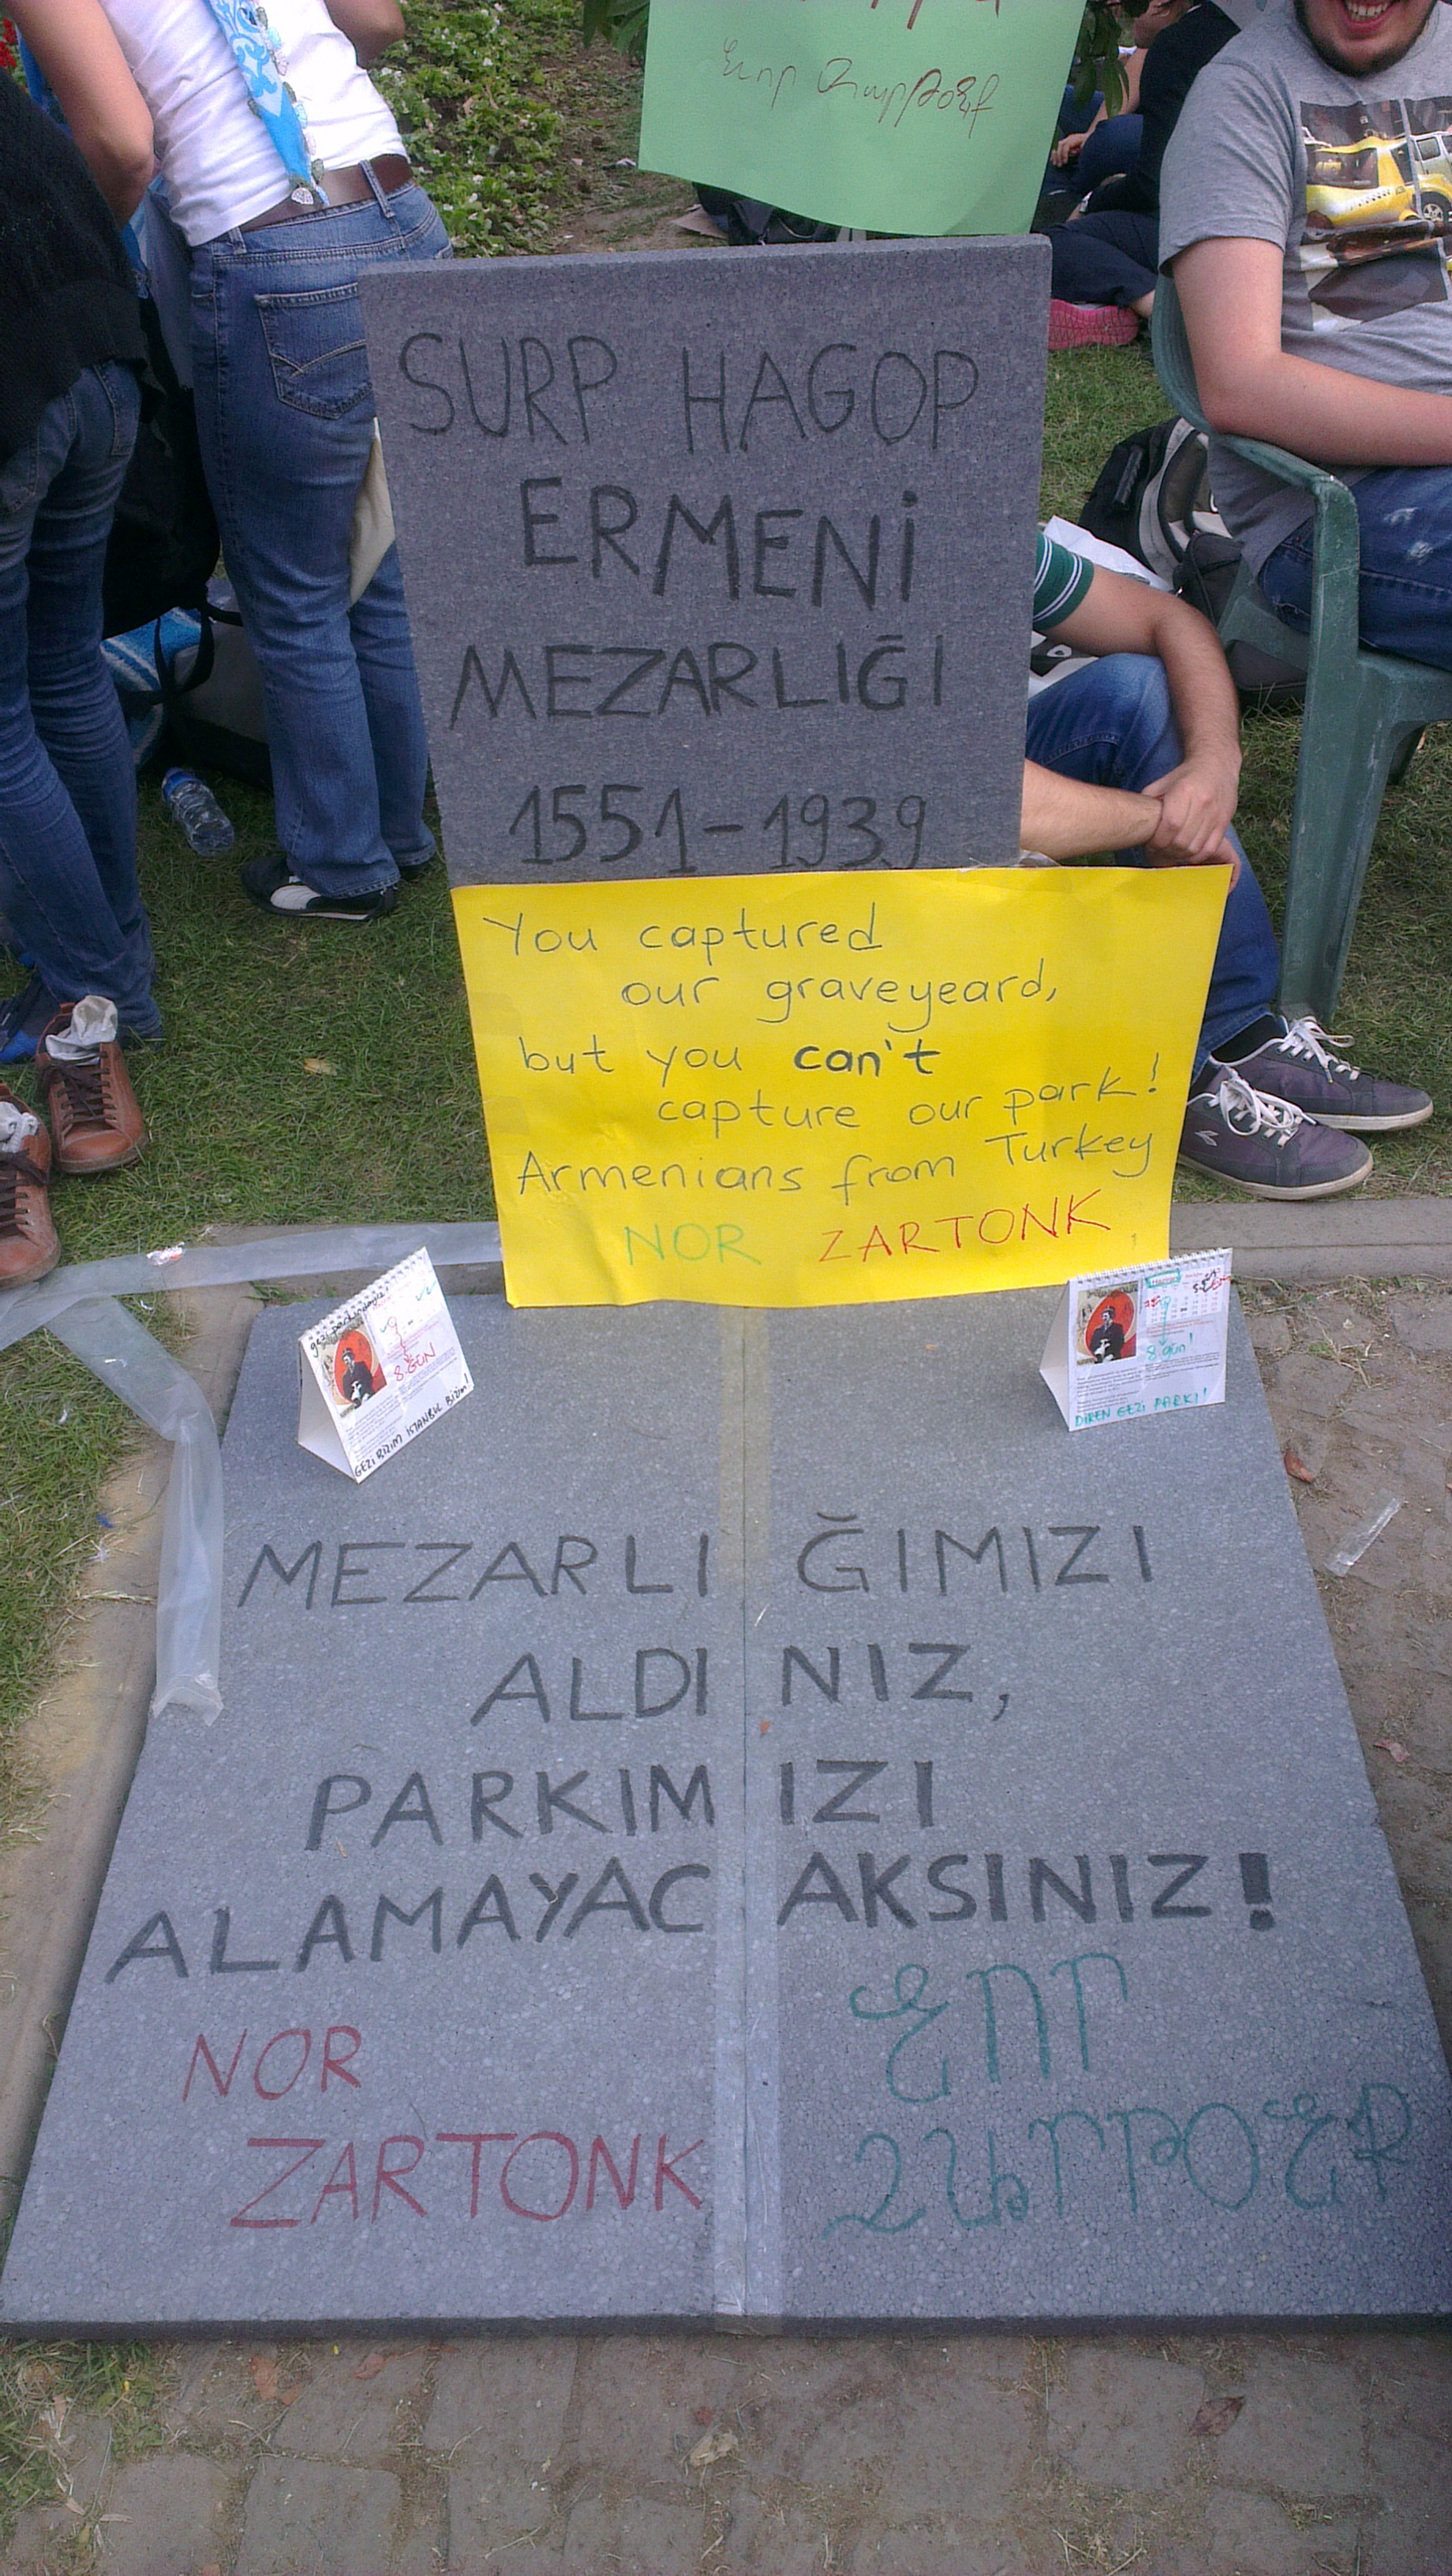 Gezi Parkı  direnişi (2013) döneminden bir pankart